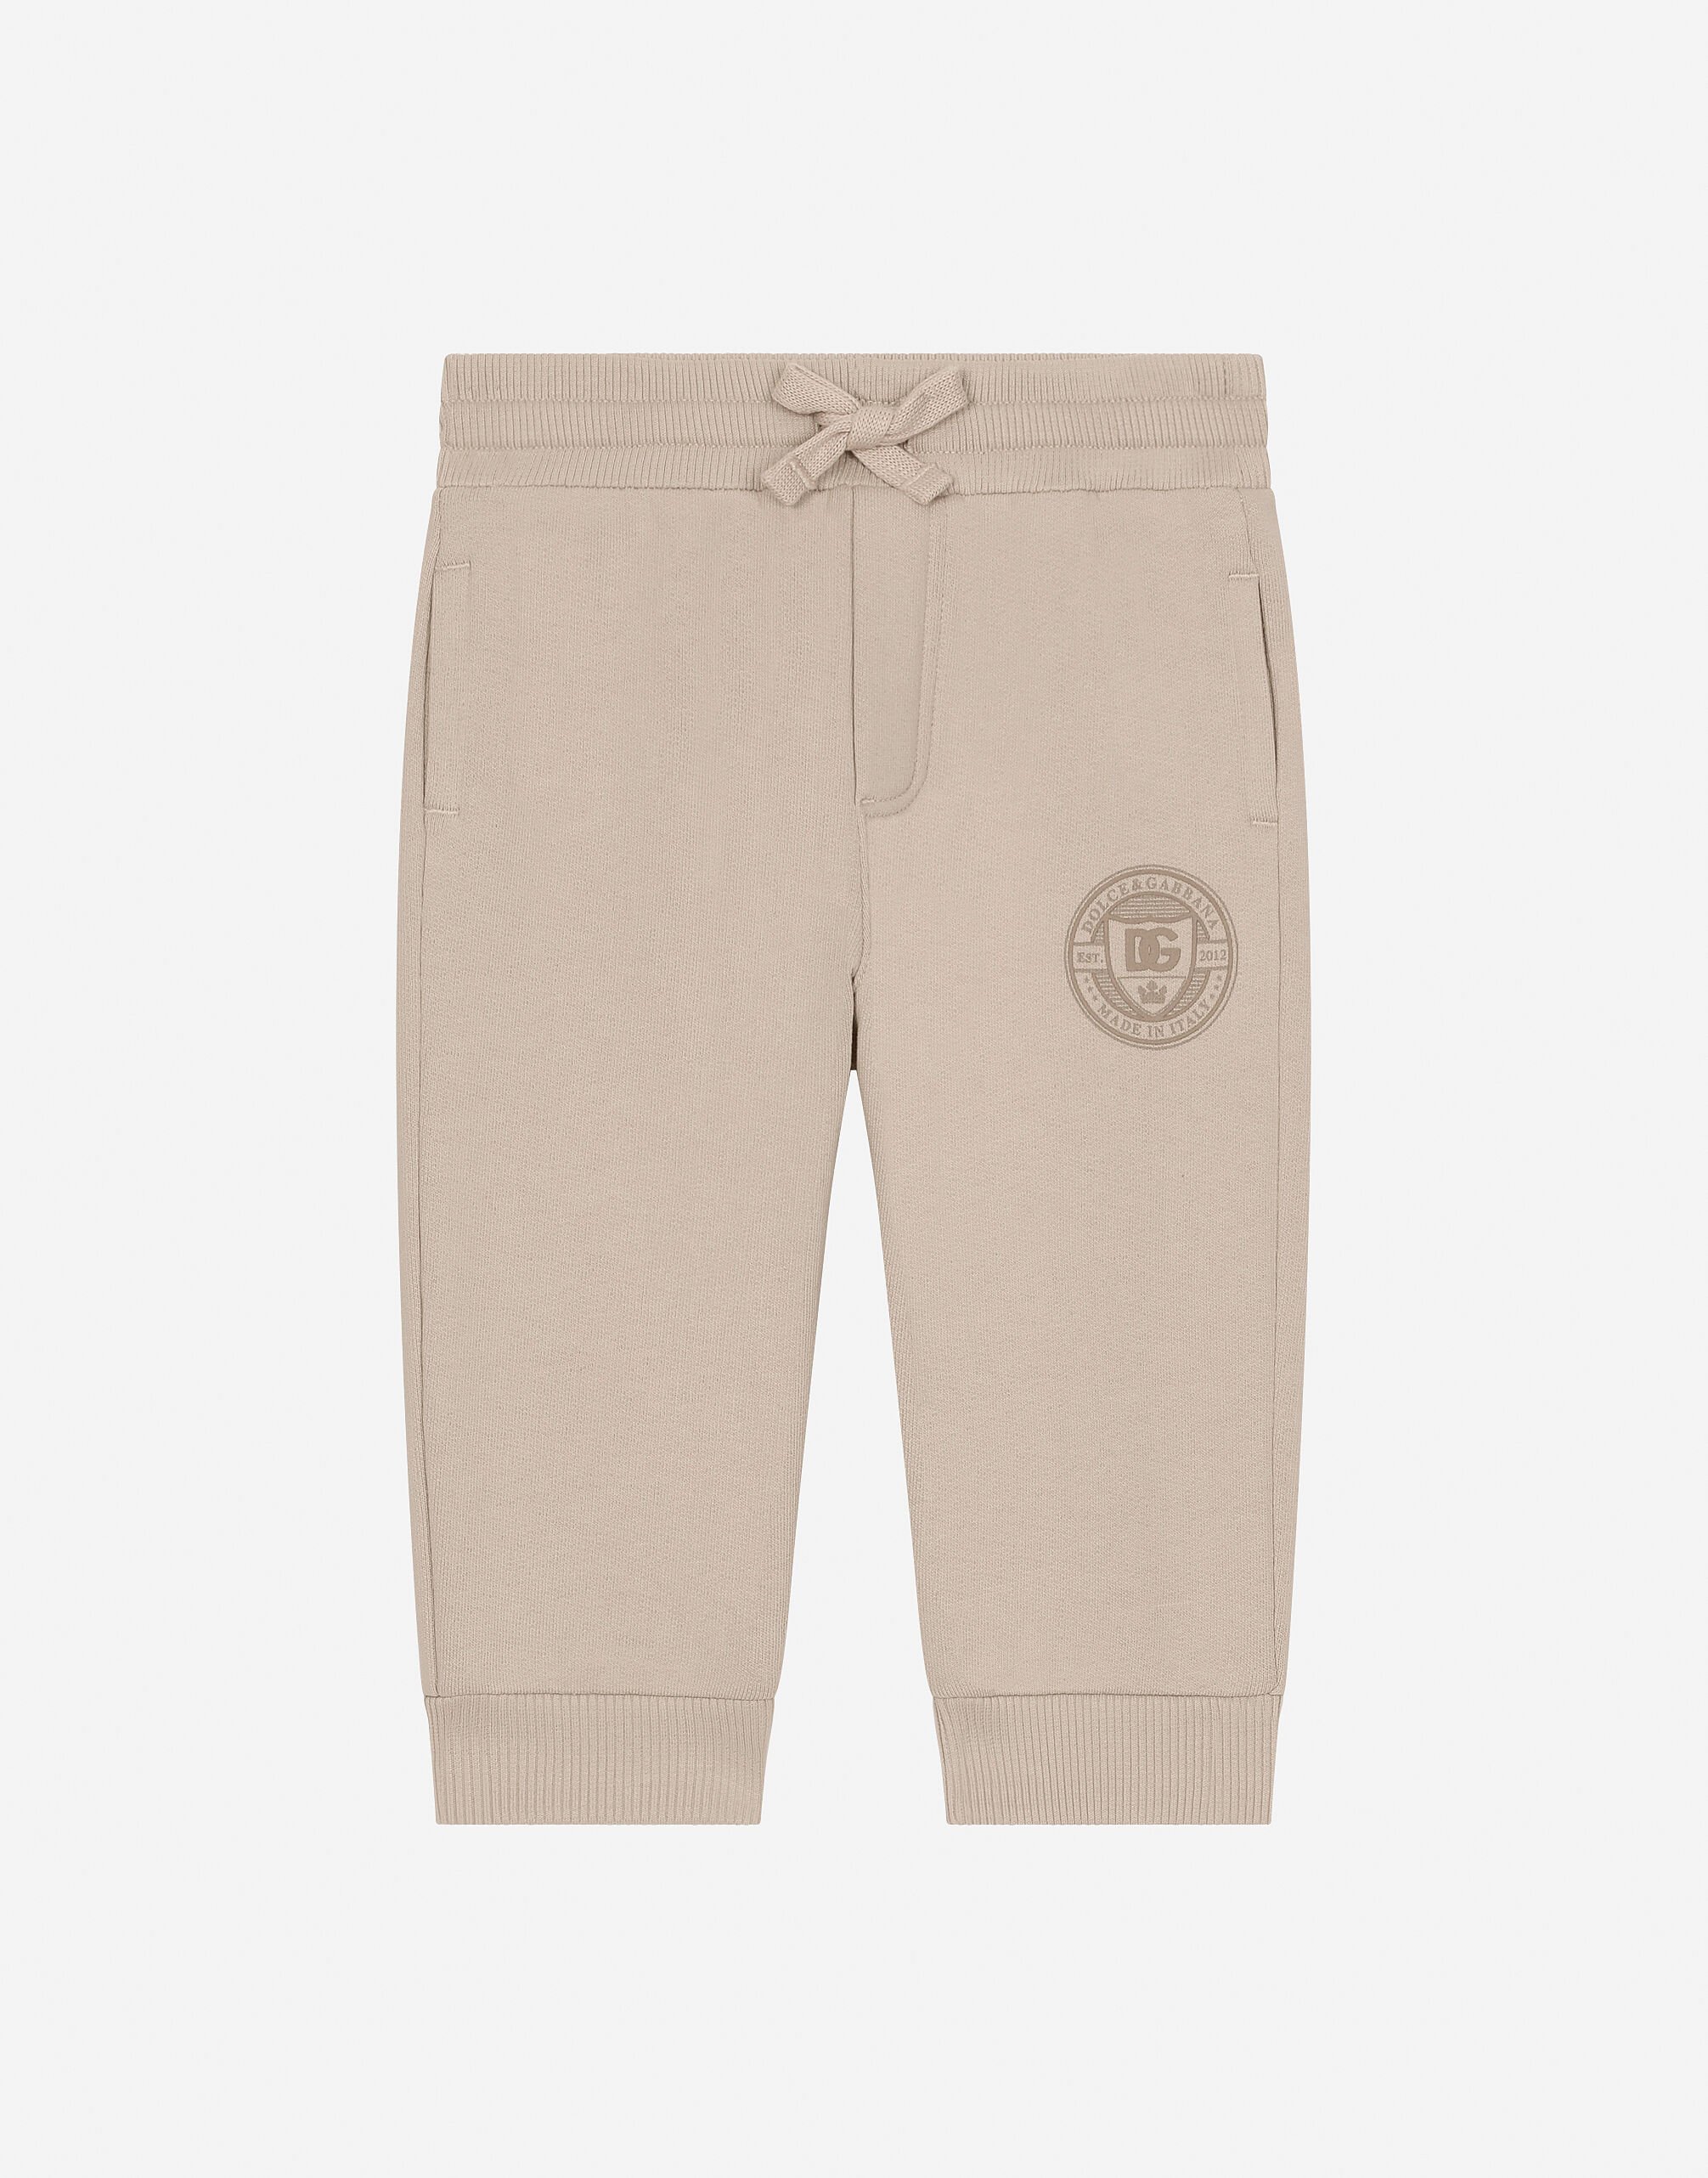 Dolce & Gabbana Pantalon de jogging en jersey avec logo DG Beige L13Q08FUFJR